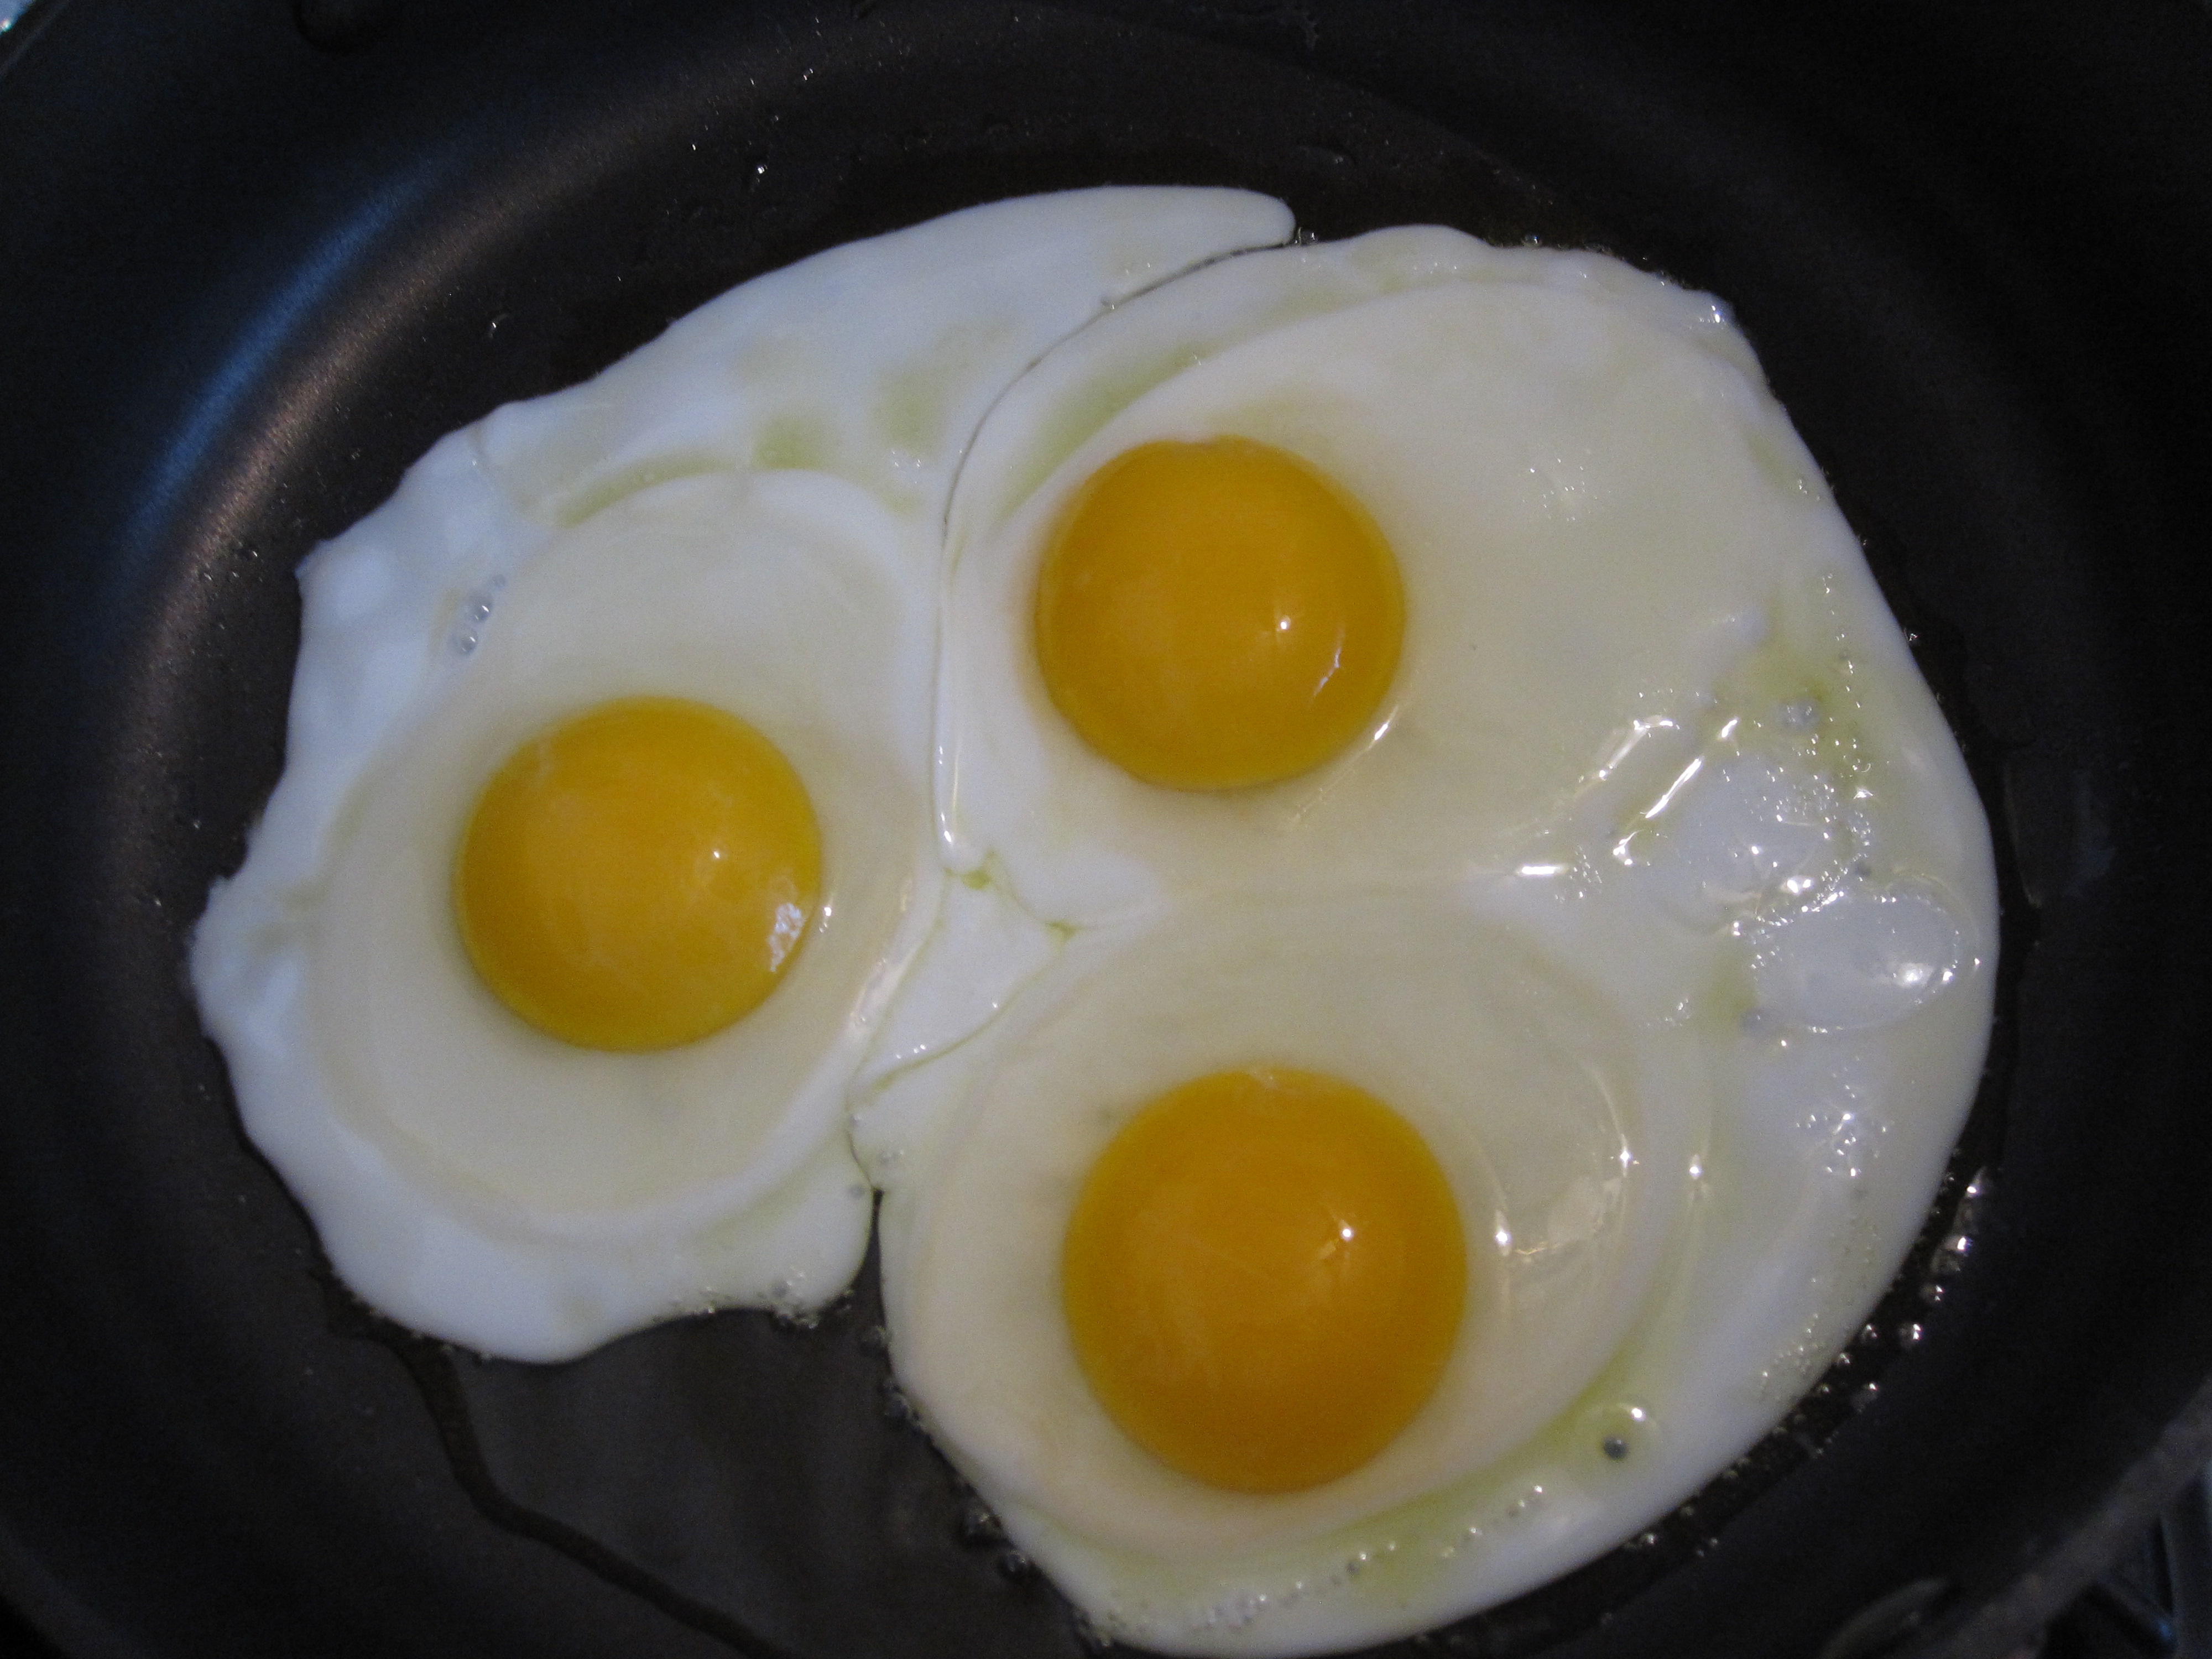 Eggs up. Санни Сайд ап яйца. Яичница. Яичница 3 яйца. Жареные яйца.